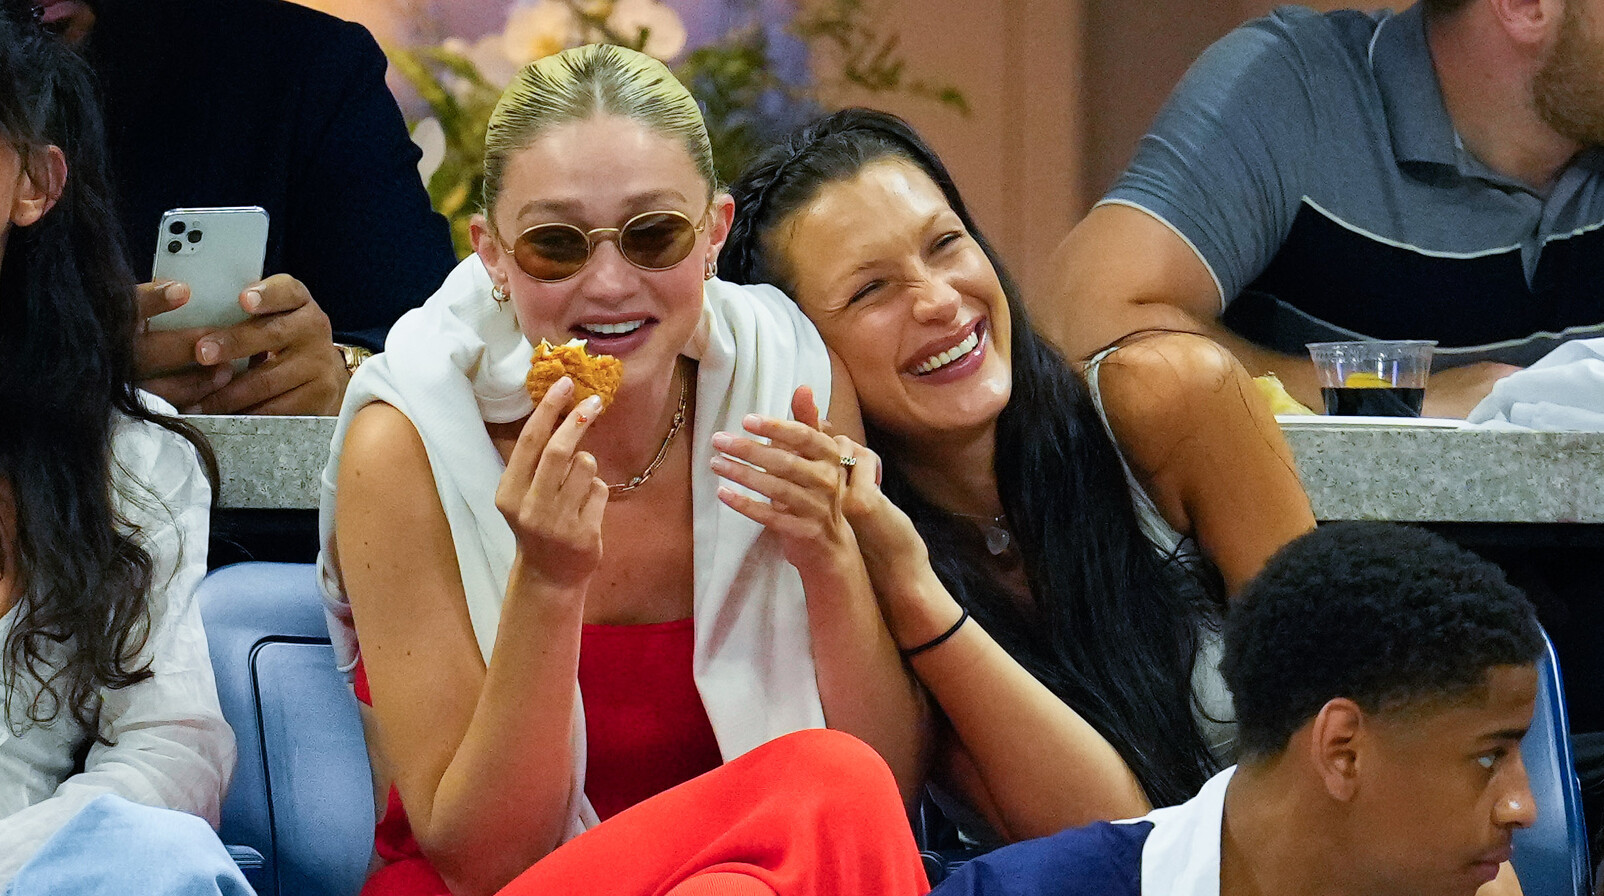 Gigi en Bellla Hadid heel hard lachen en eten tijdens wedstijd kijken zonnebril rode outift